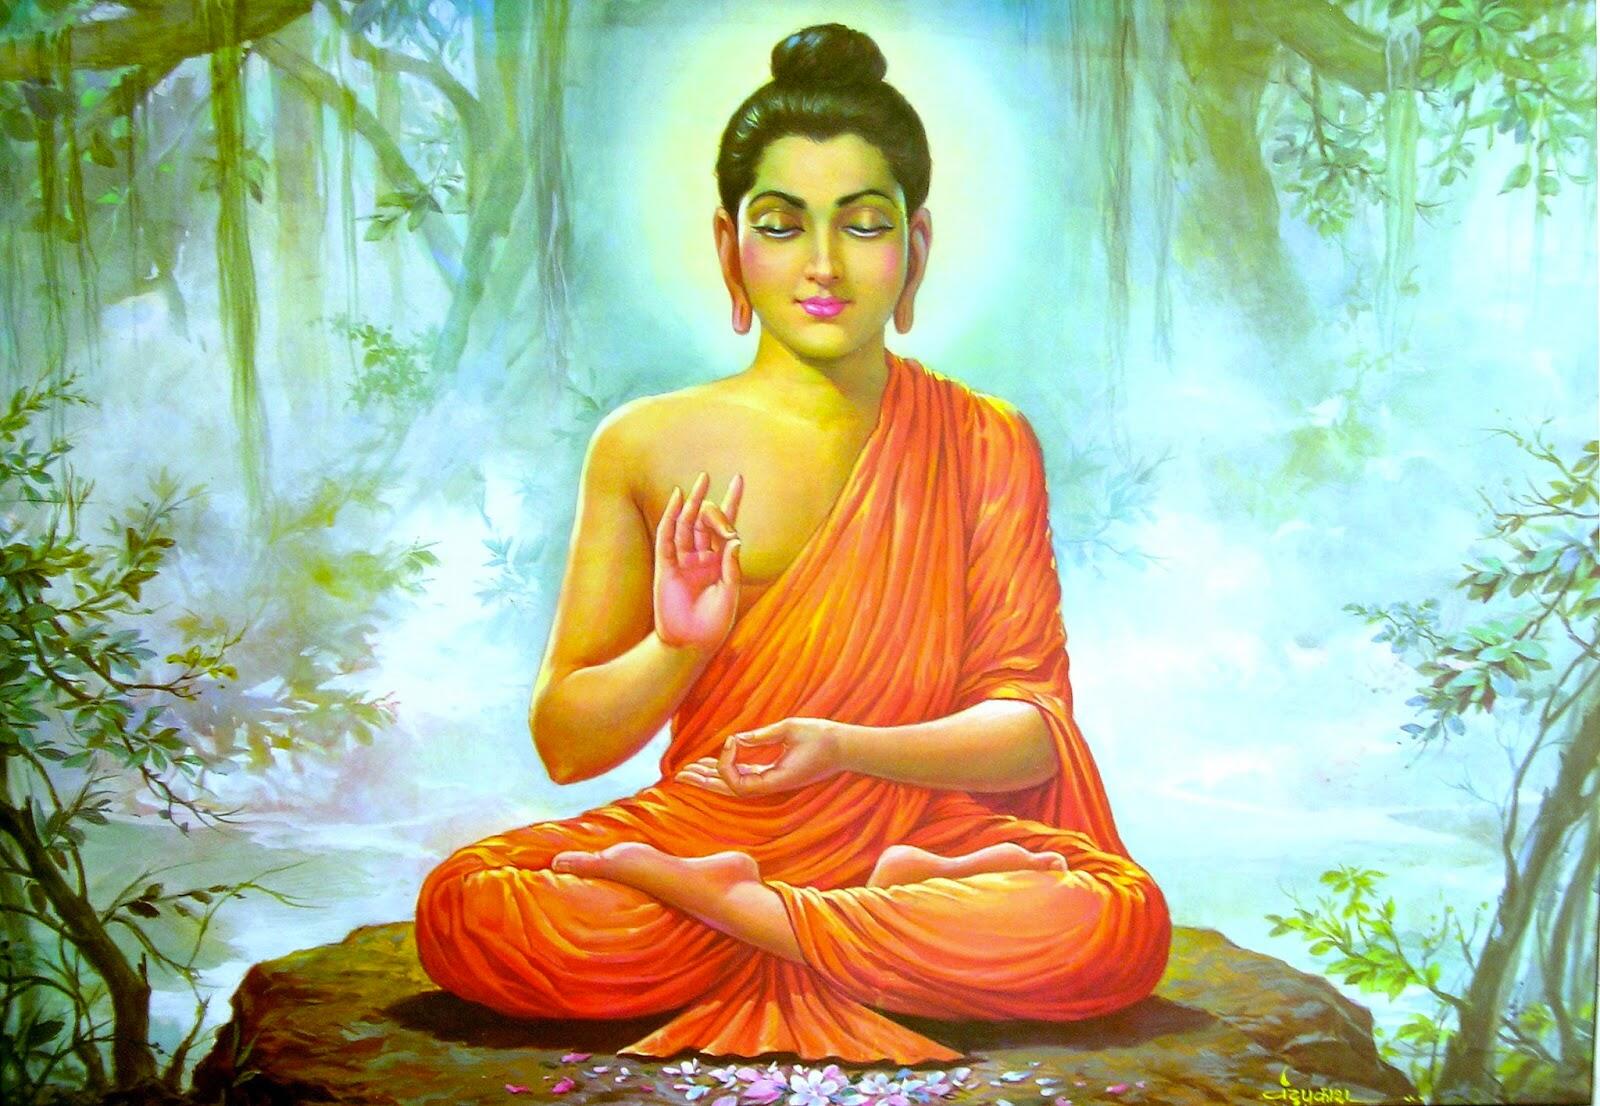 Description: Hình Phật đẹp (Phần 7) - Lịch sử Đức Phật Thích Ca Mâu Ni | Thích Phật Pháp